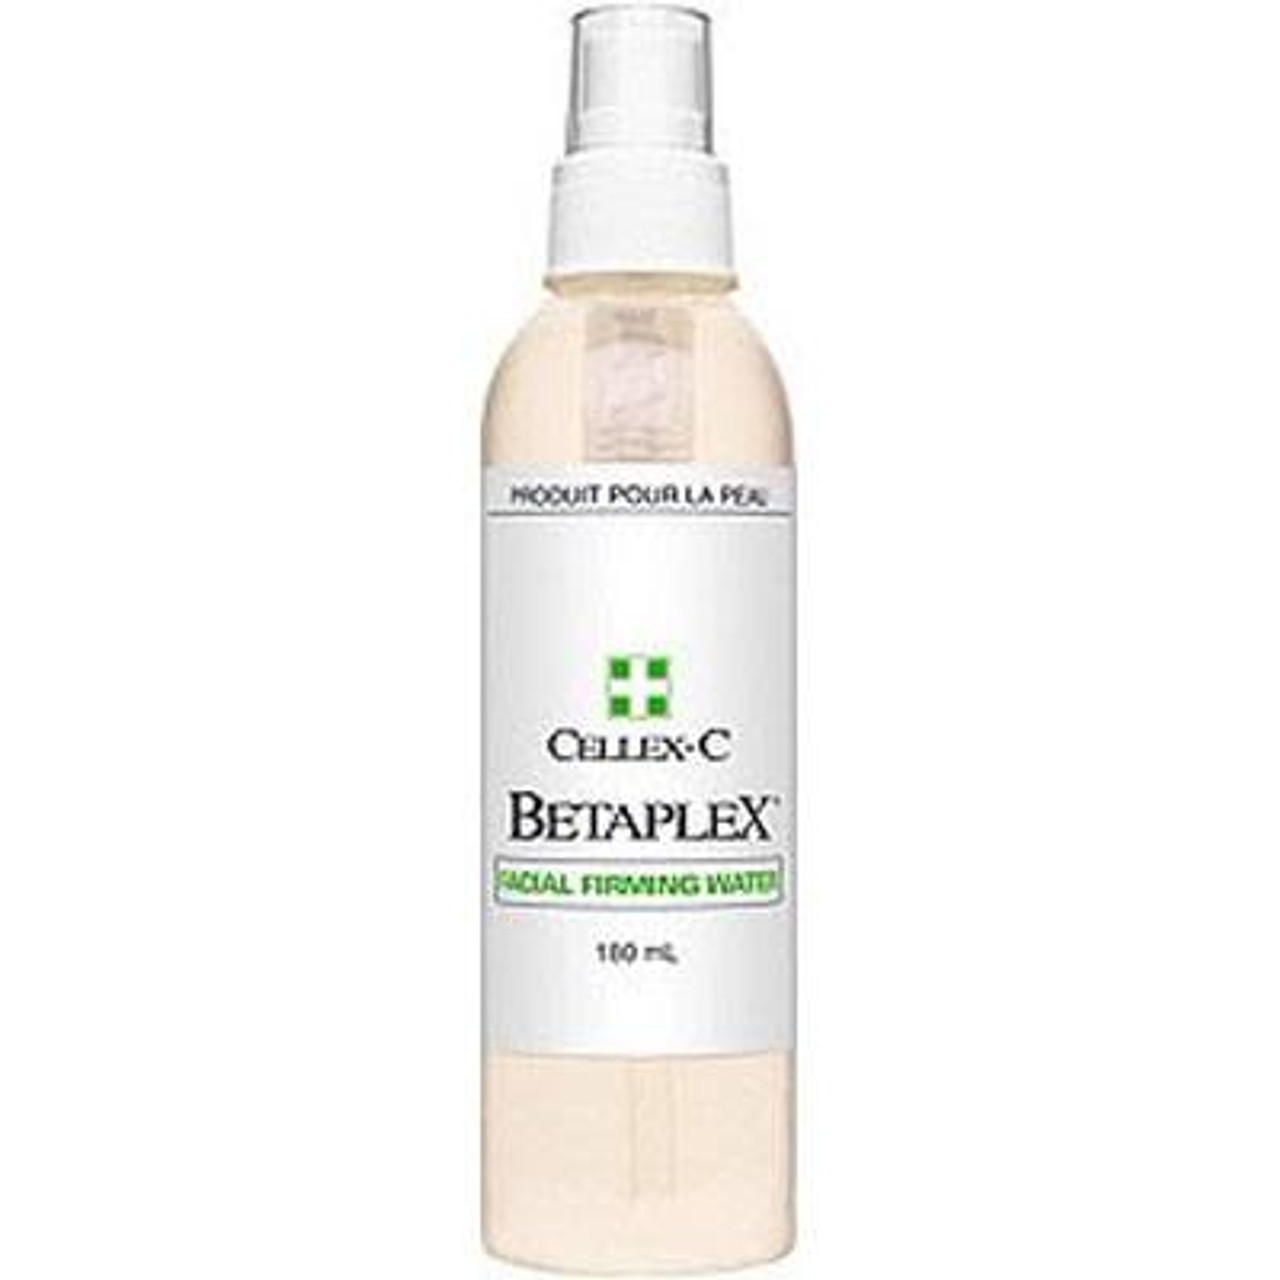 Cellex-C Betaplex Facial Firming Water, 6 oz (180 ml)